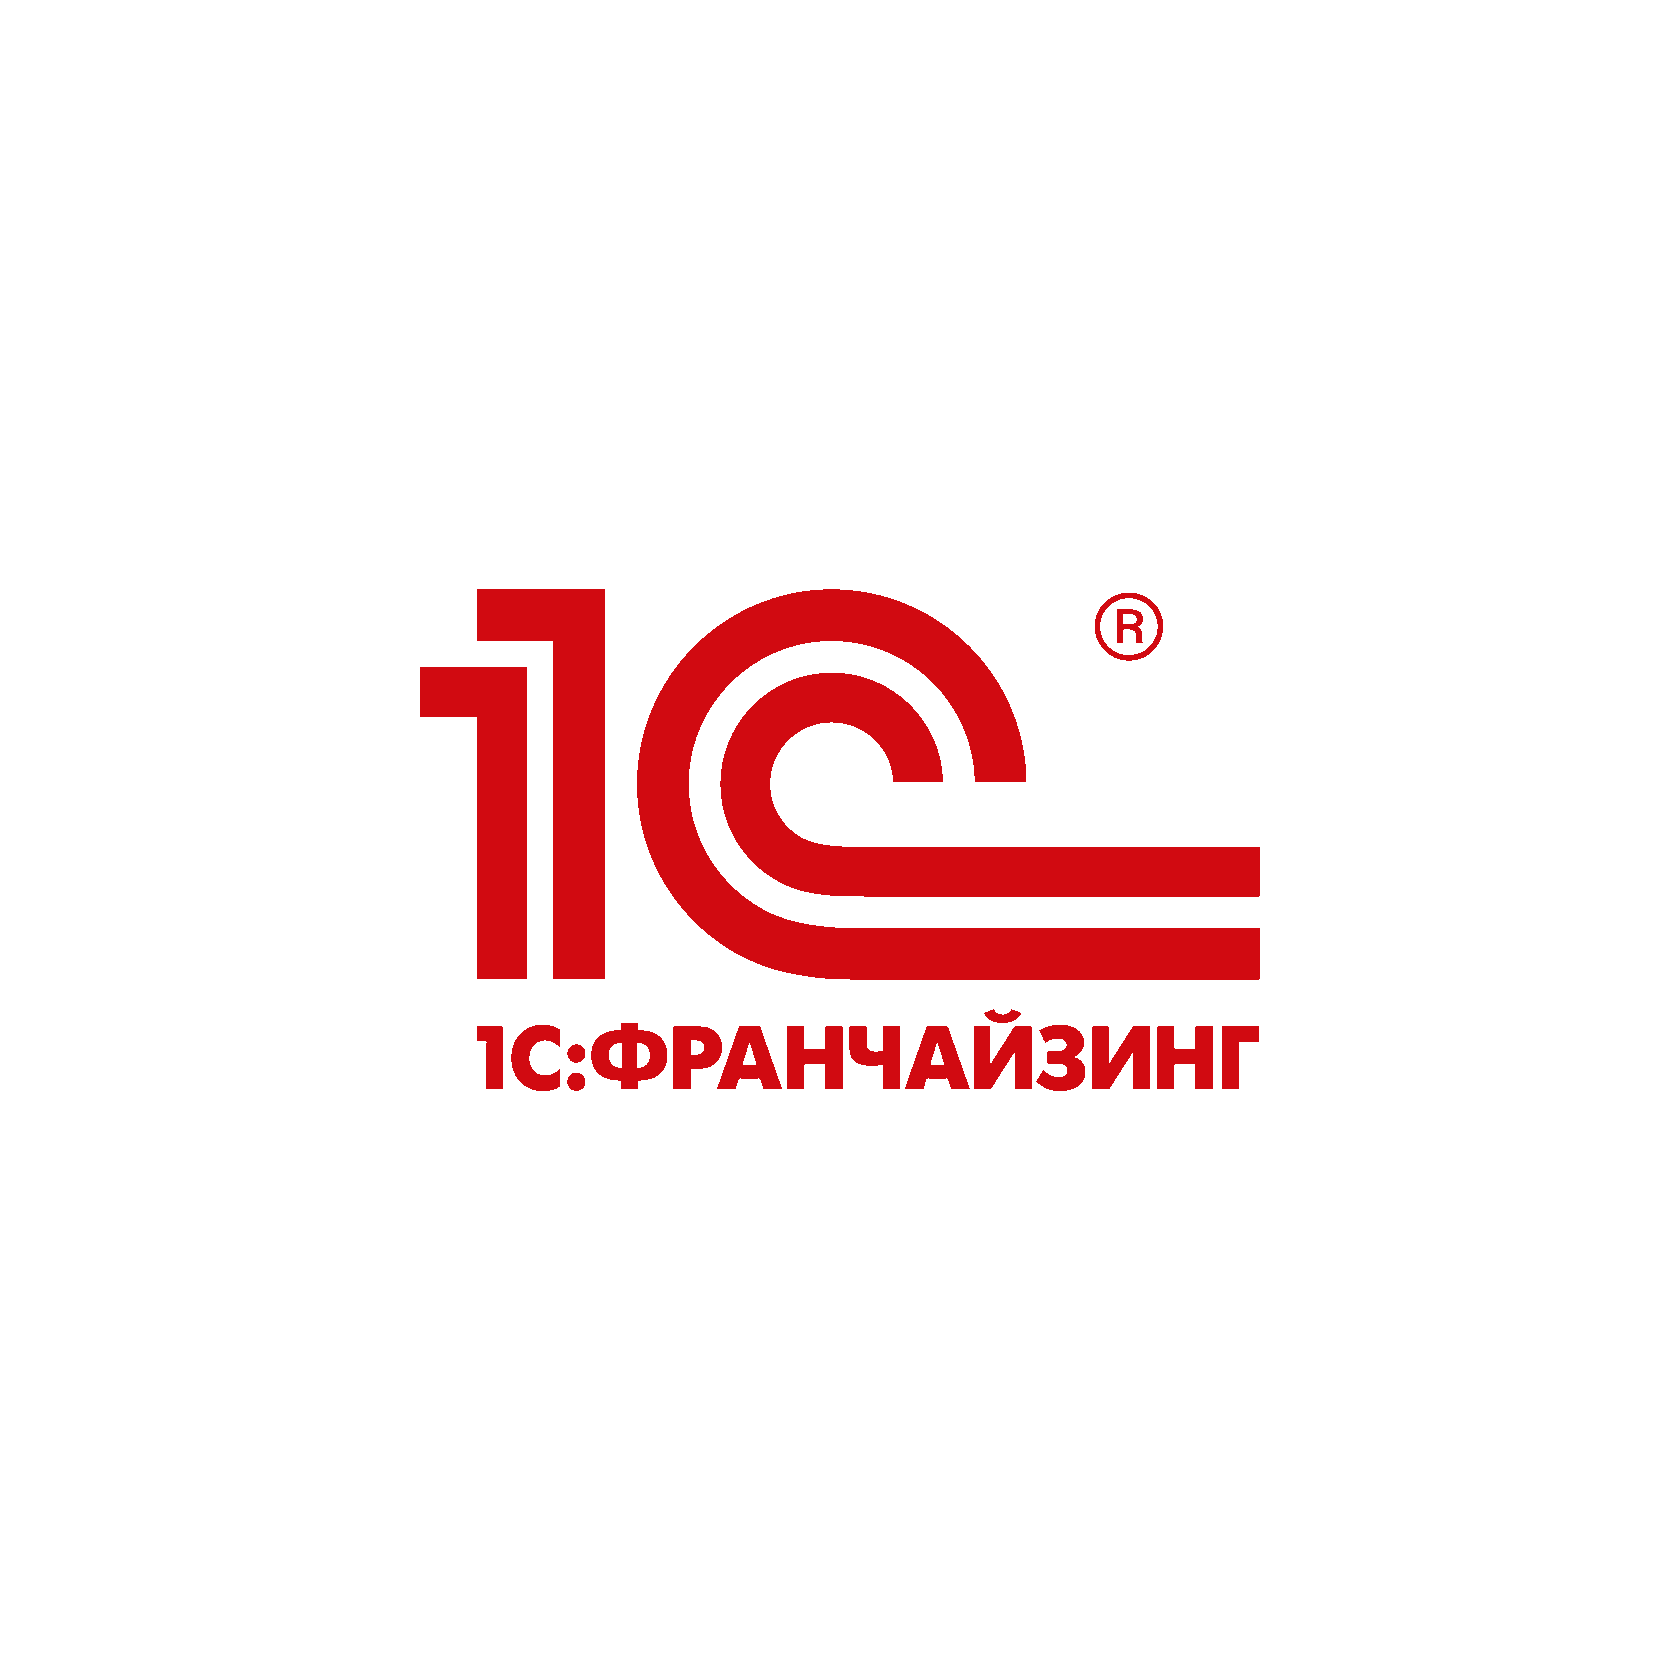 01 c ru. 1с франчайзинг. 1c логотип. Фирма 1с логотип. 1с франчайзи logo.